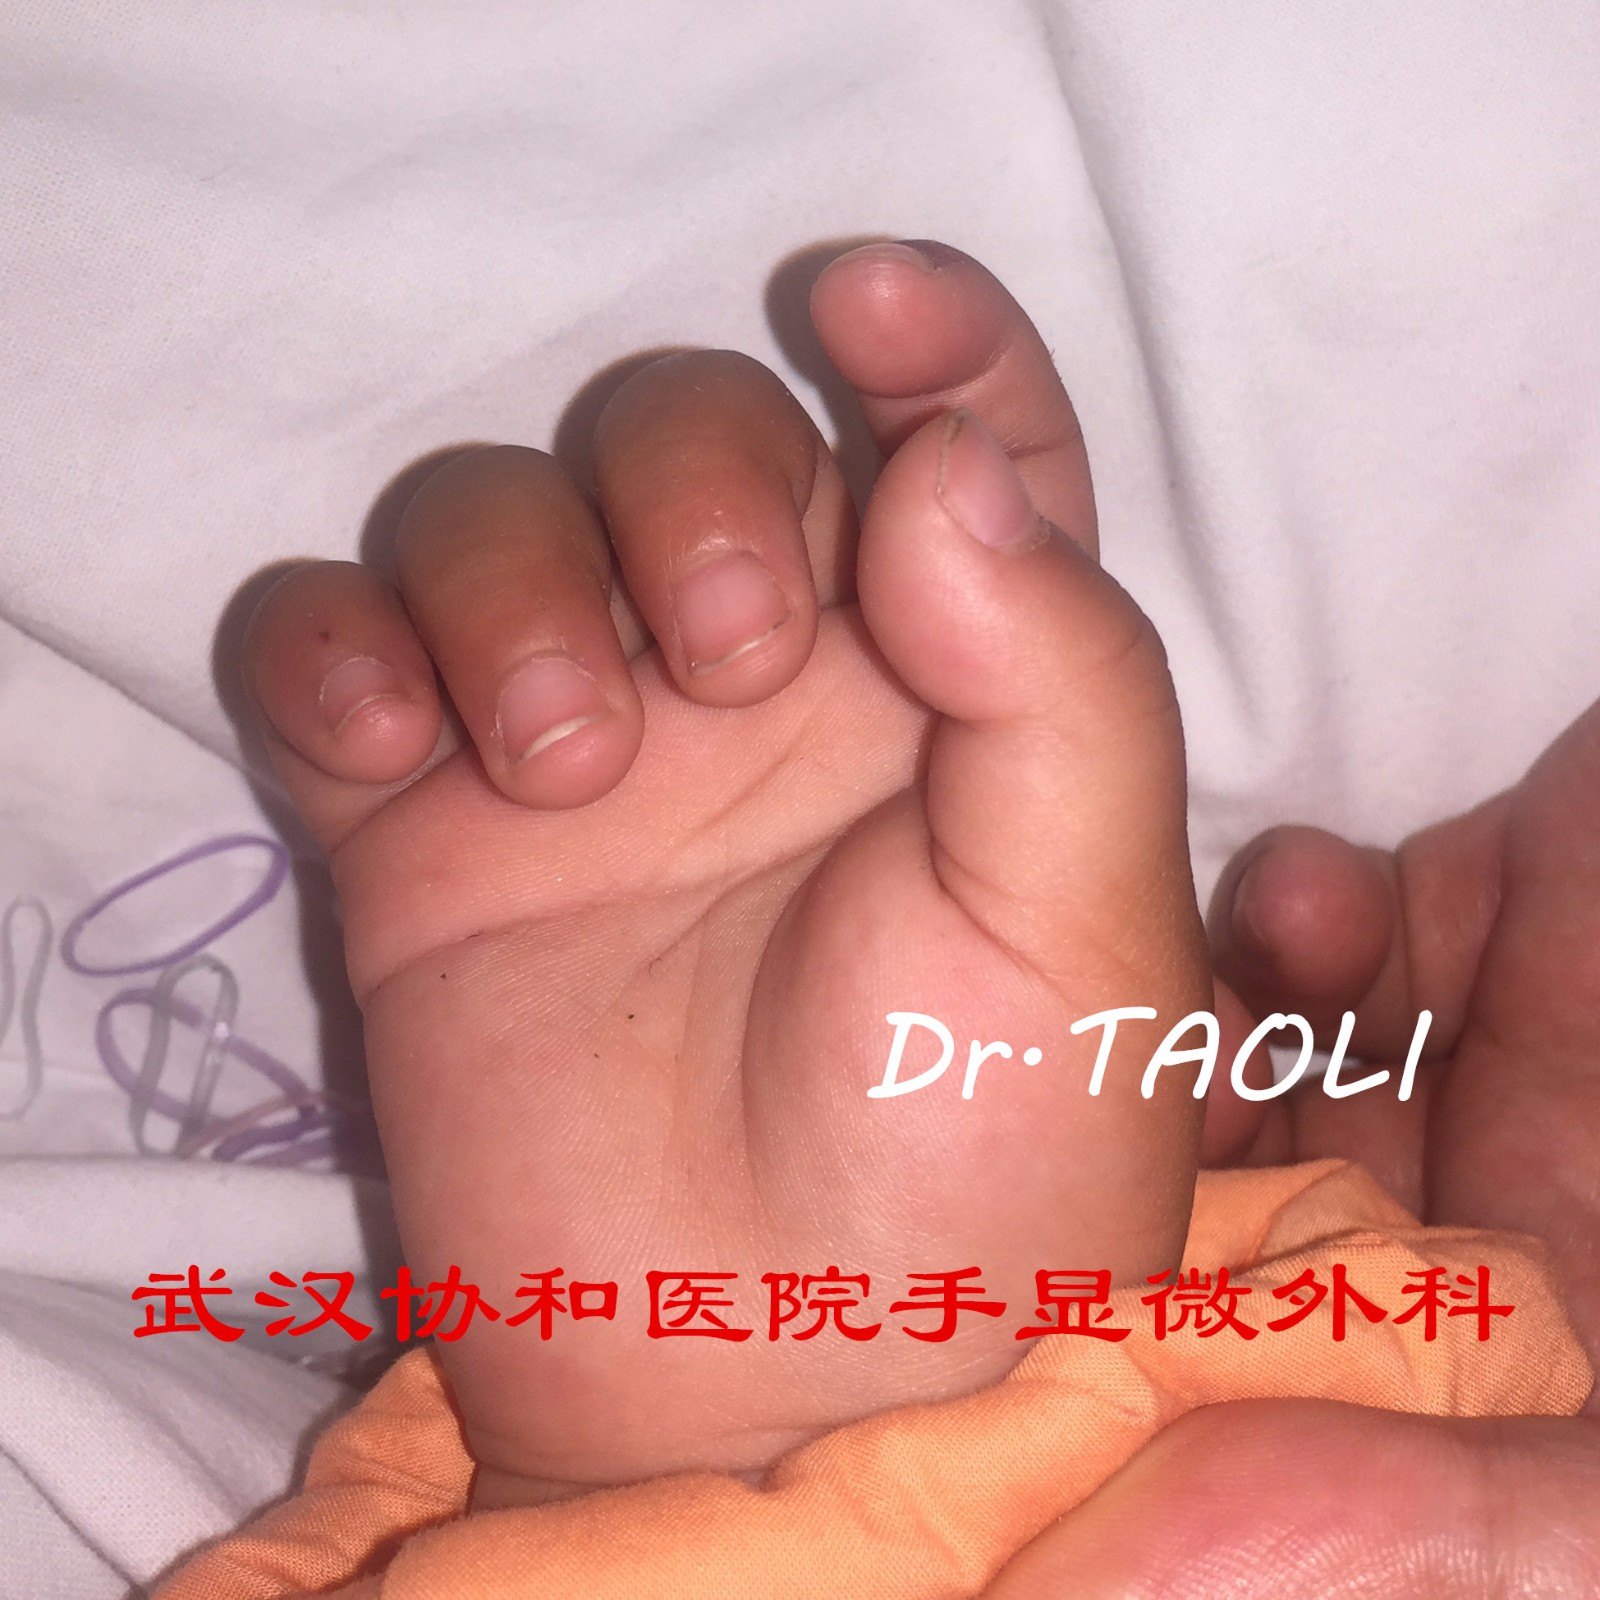 拇指不能顶呱呱的原因宝宝为何会得腱鞘炎